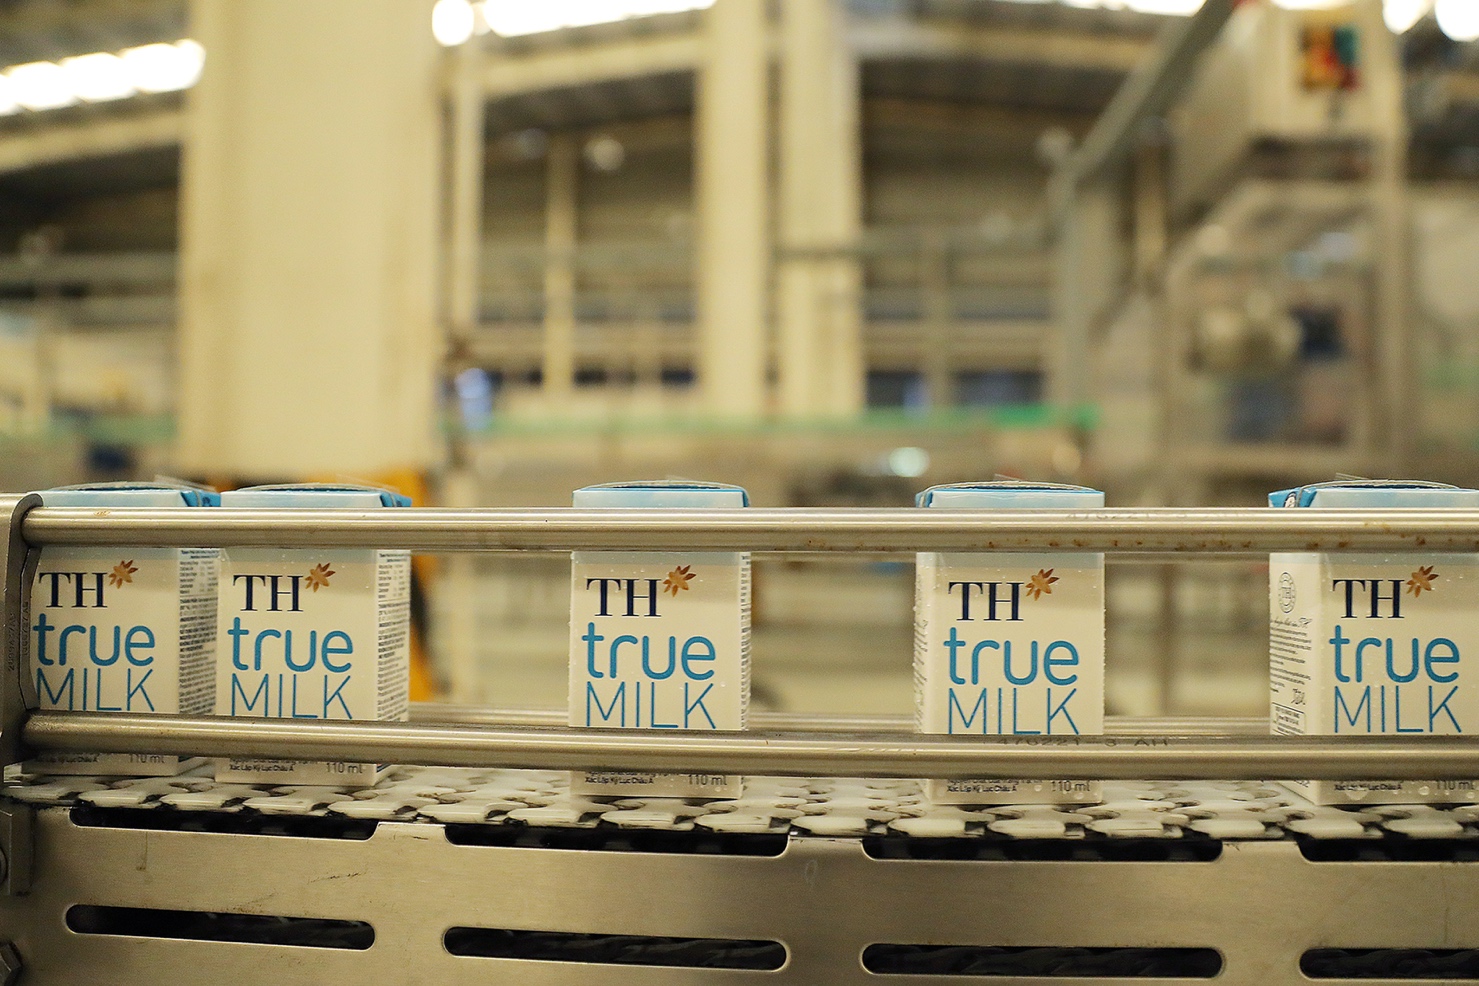 Quy trình khép kín giúp dòng sữa tươi sạch TH true MILK đạt chuẩn quốc tế